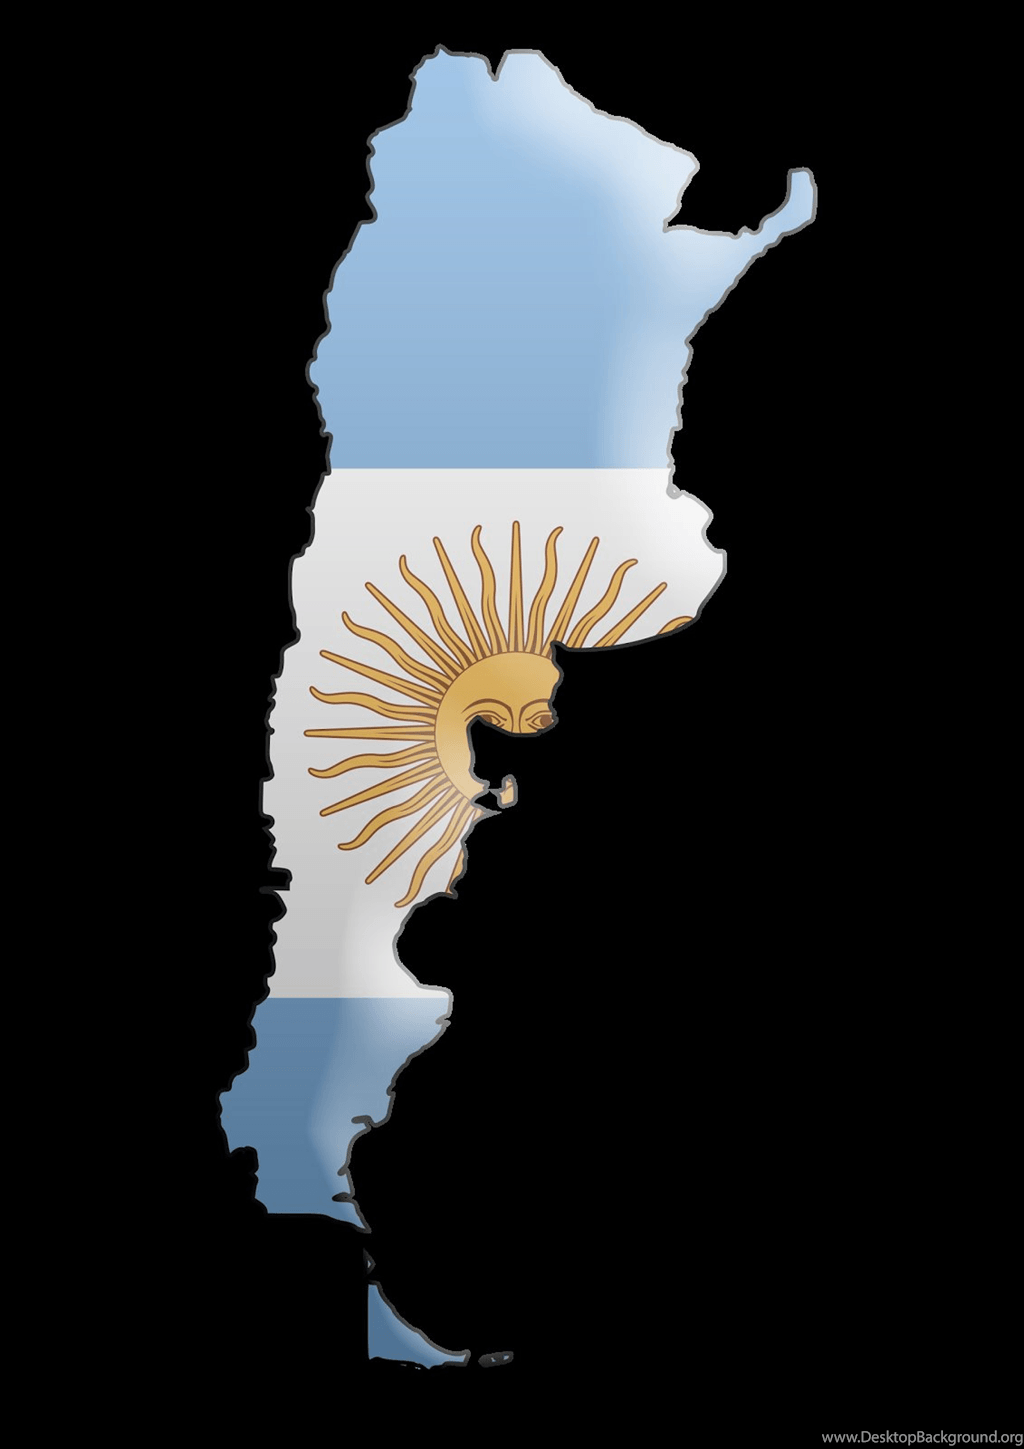 My Life Like: Wallpaper Flag Of Argentina Desktop Background